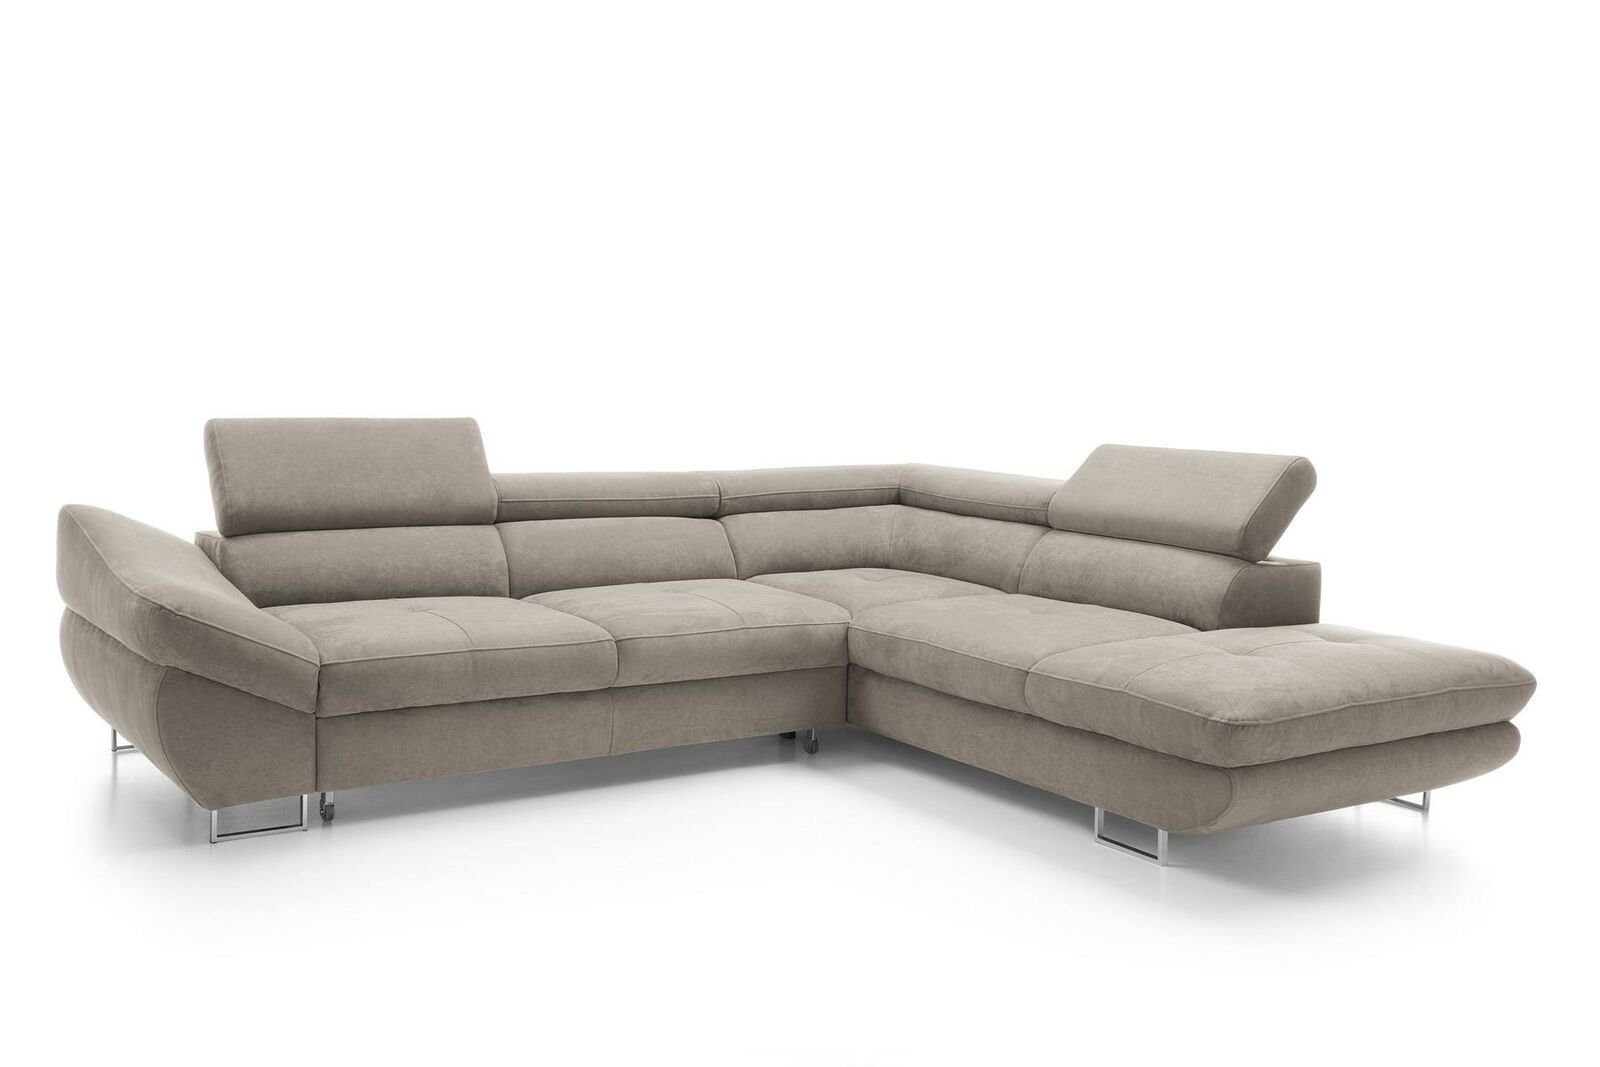 Grau weiche L-Form Sofa Sets Ecksofa, Couch Möbel Wohnbereich Polsterung Ecke JVmoebel